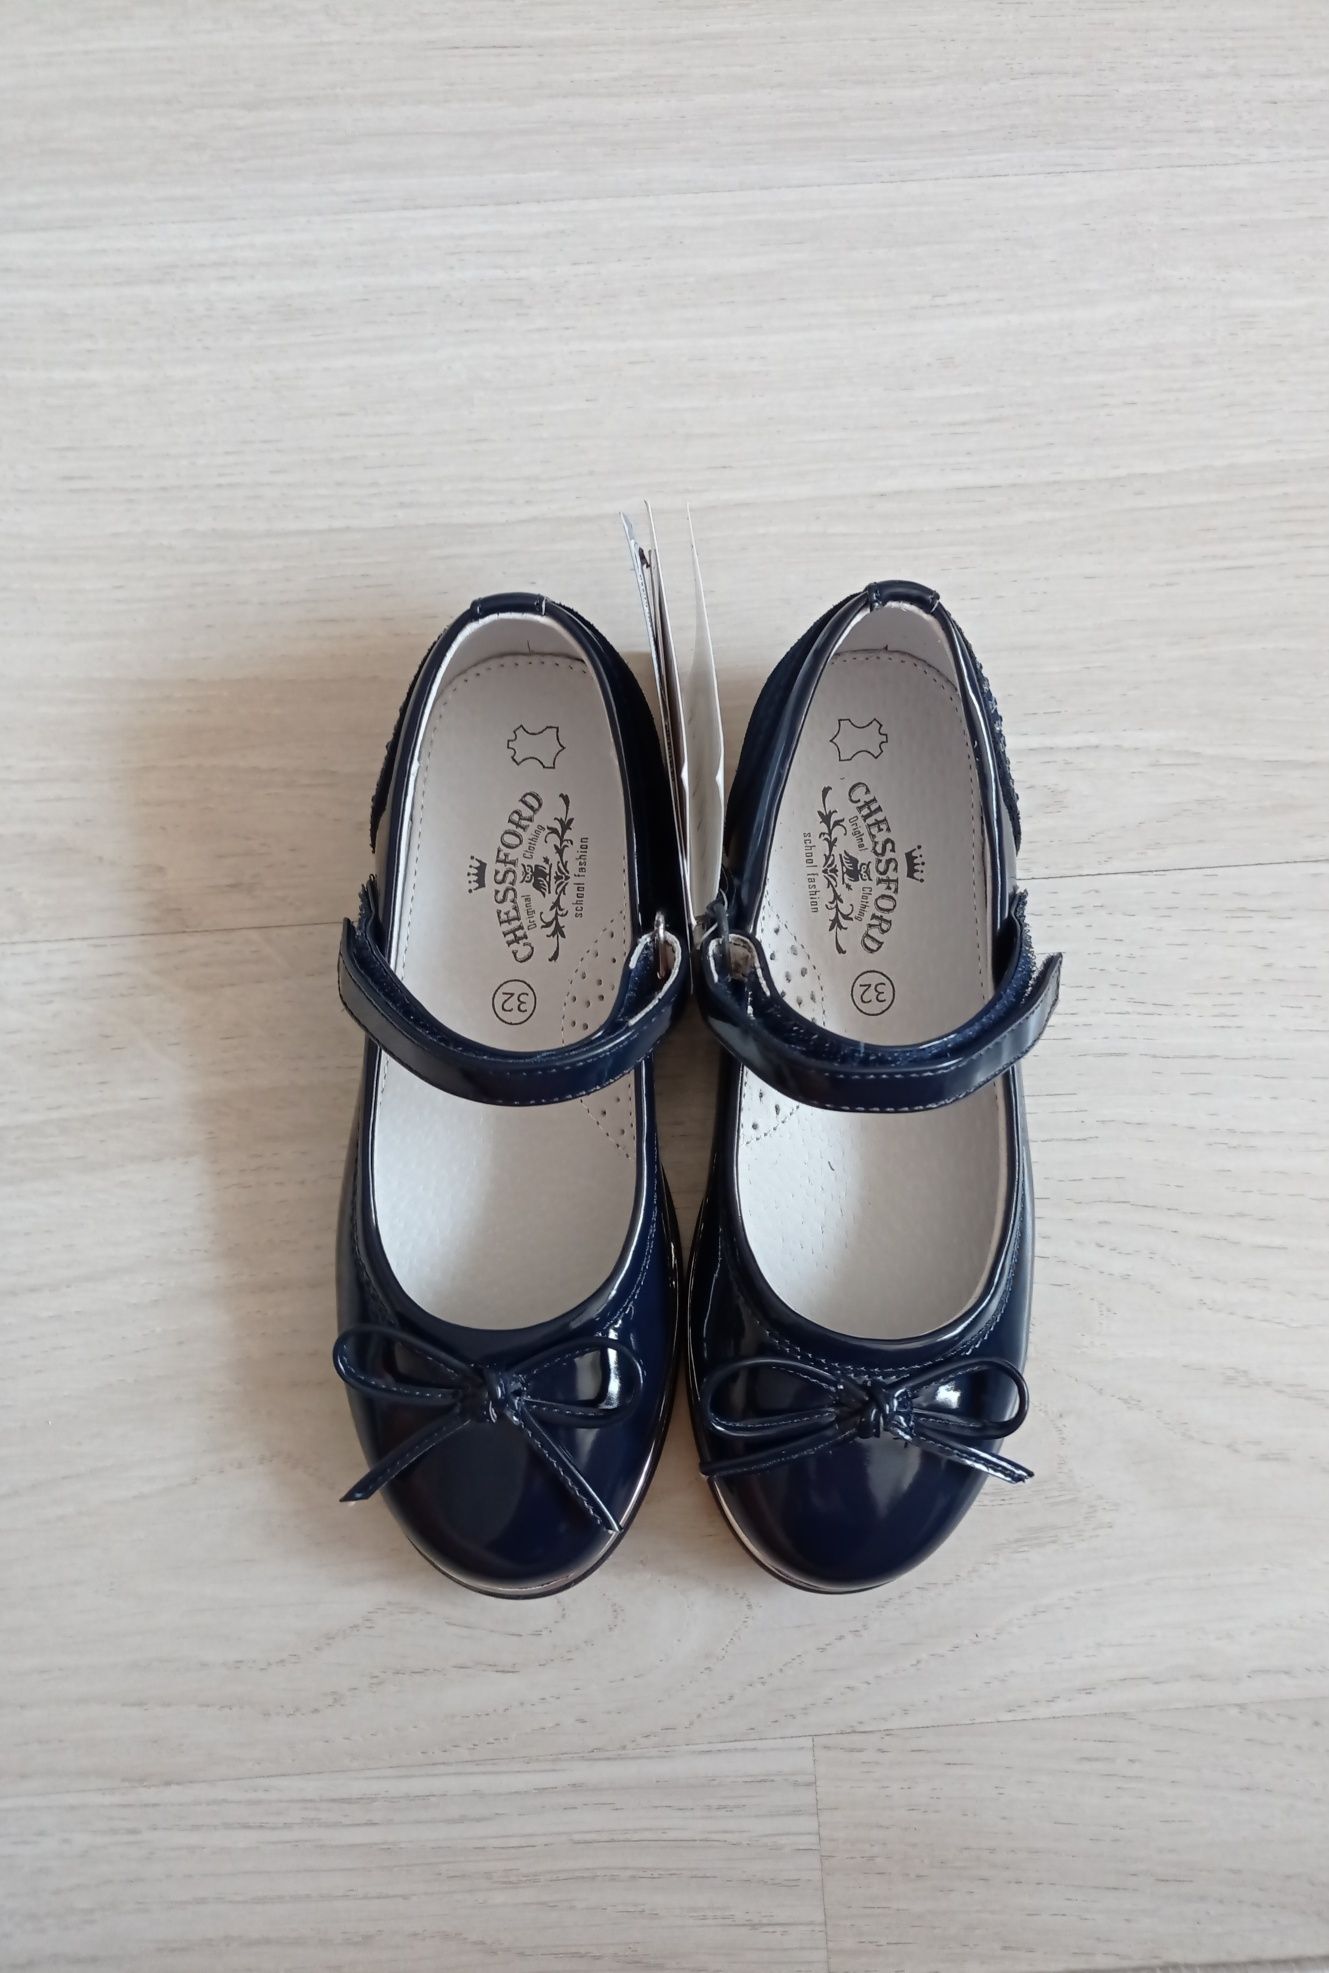 Новые,  школьные, стильные туфли для девочки темно-синего цвета